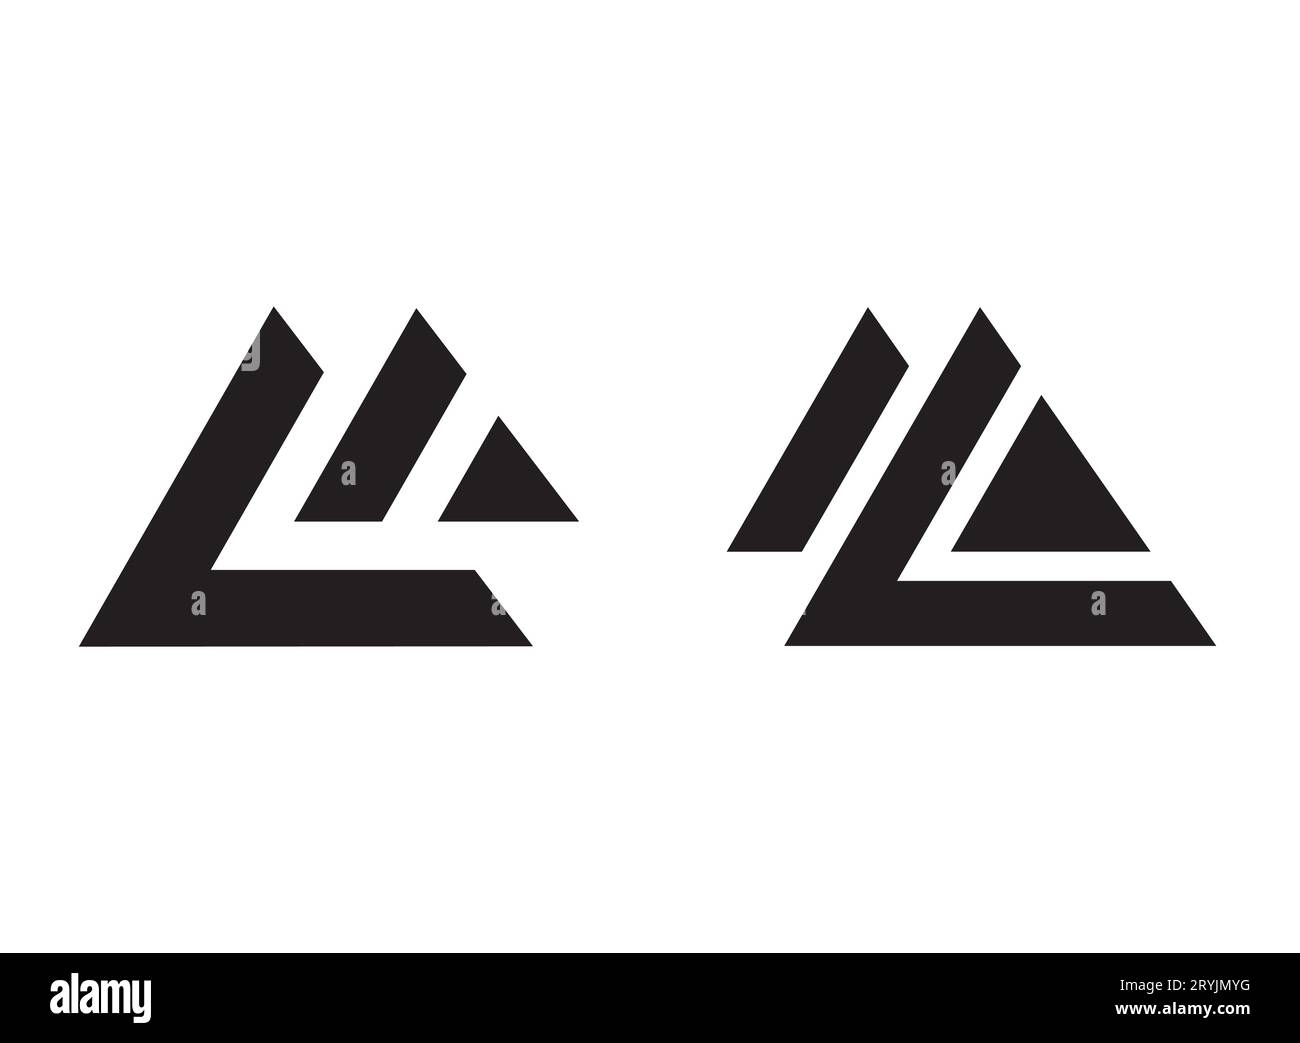 Wir stellen vor: Unser innovatives „LM Letter Mark Modern Symbol Logo Design“. Dieses nahtlose Logo integriert nahtlos Initialen, Schriftart und einen schlanken Buchstaben d Stock Vektor